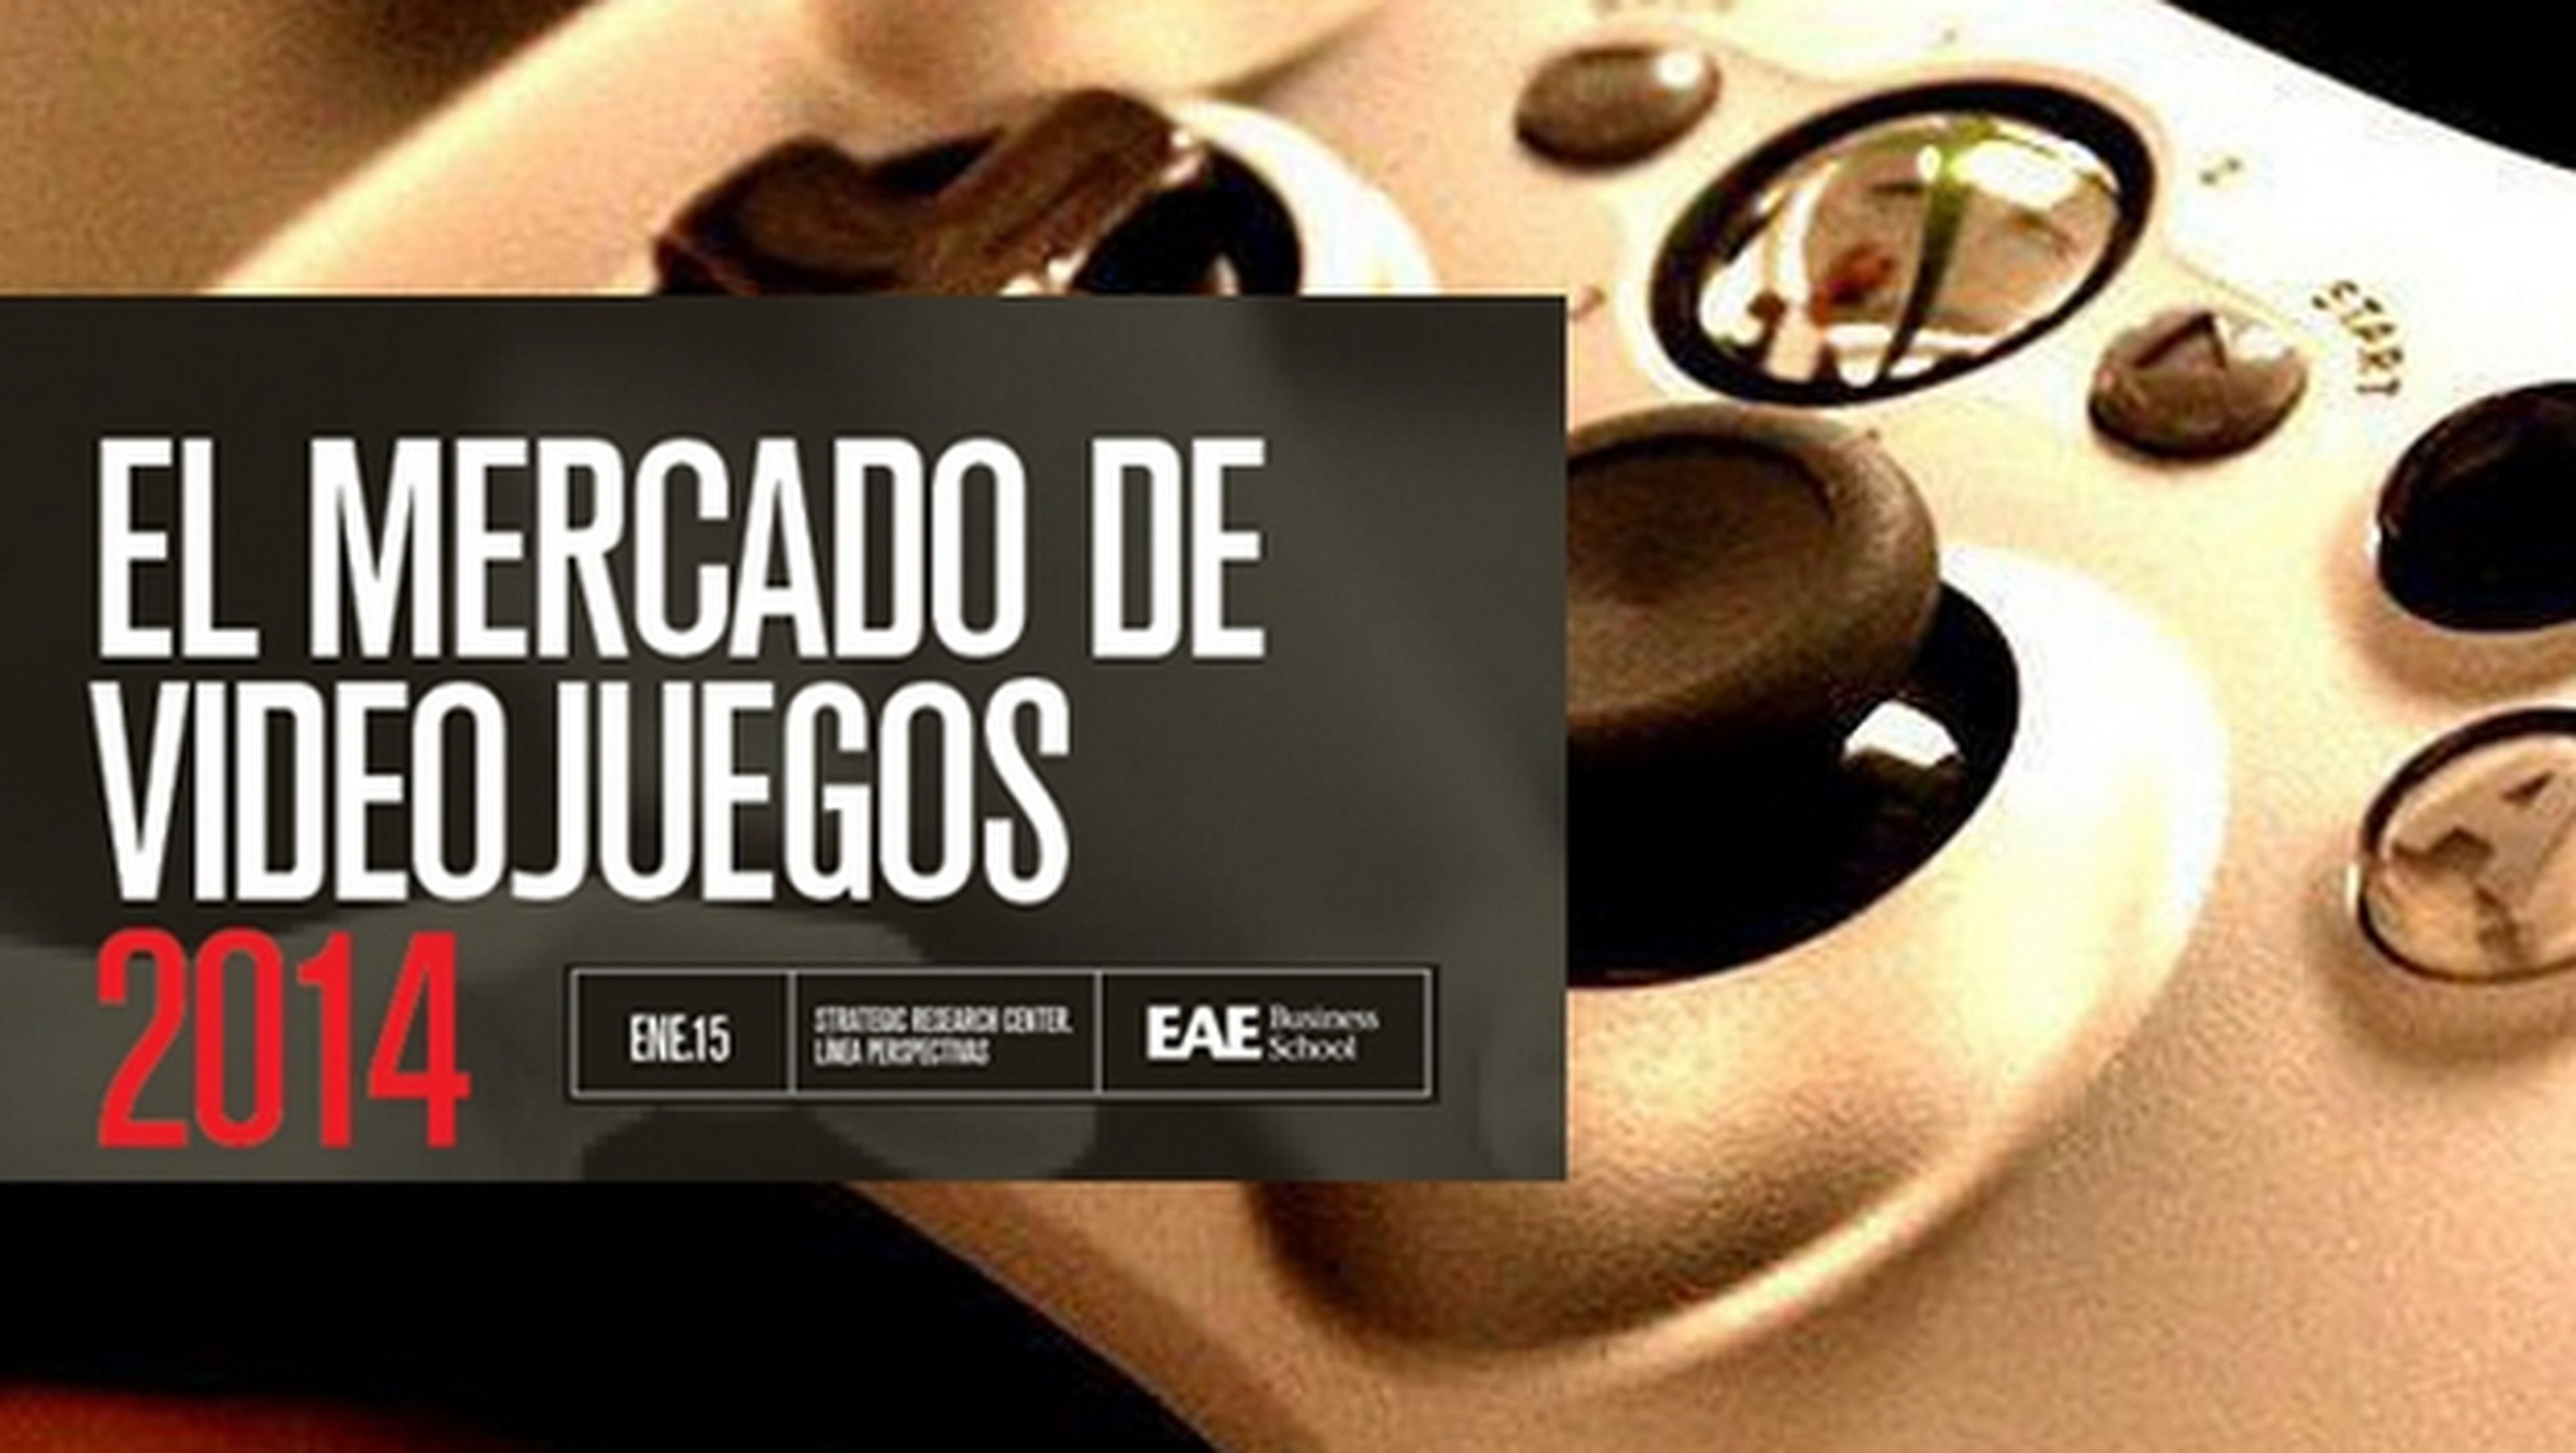 Las ventas de videojuegos en España crecen un 31% en 2014